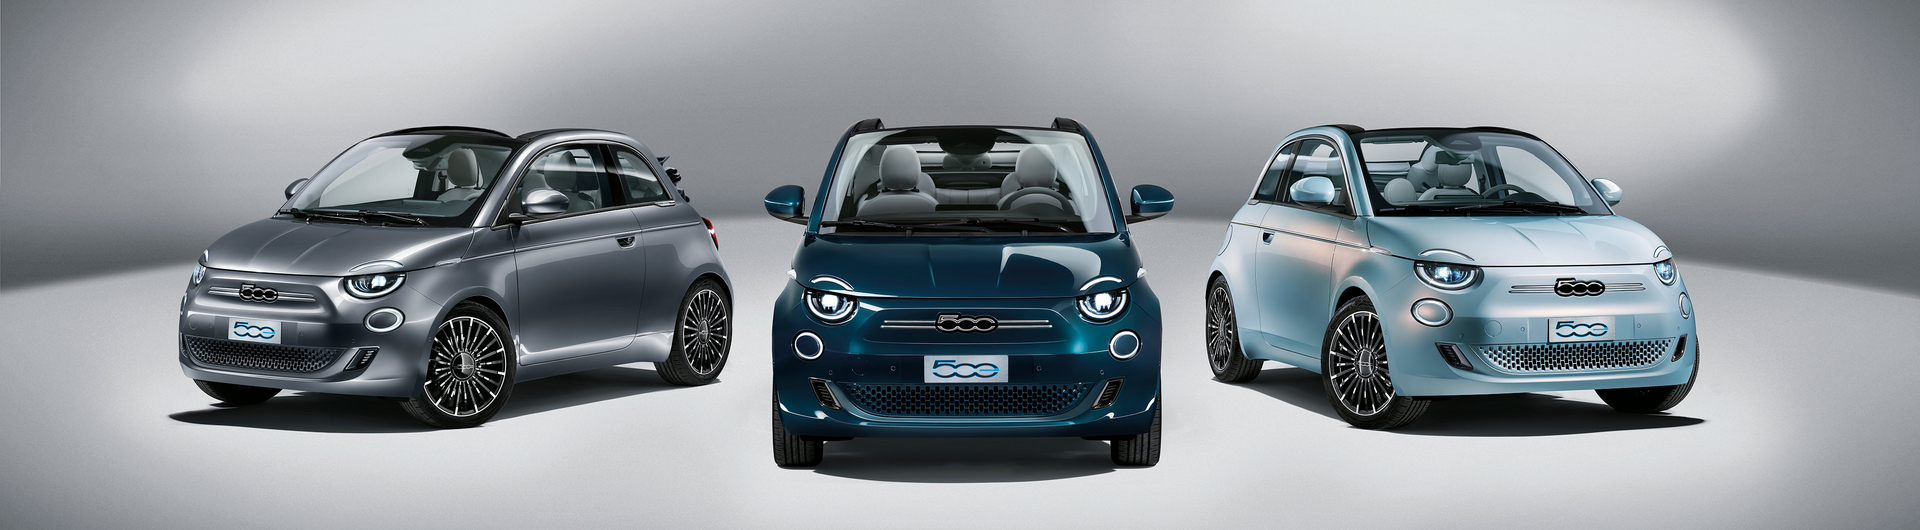 Der neue Fiat 500 "la Prima" - der erste vollelektrische Fiat 500 bei Ihrer RKG Markenwelt